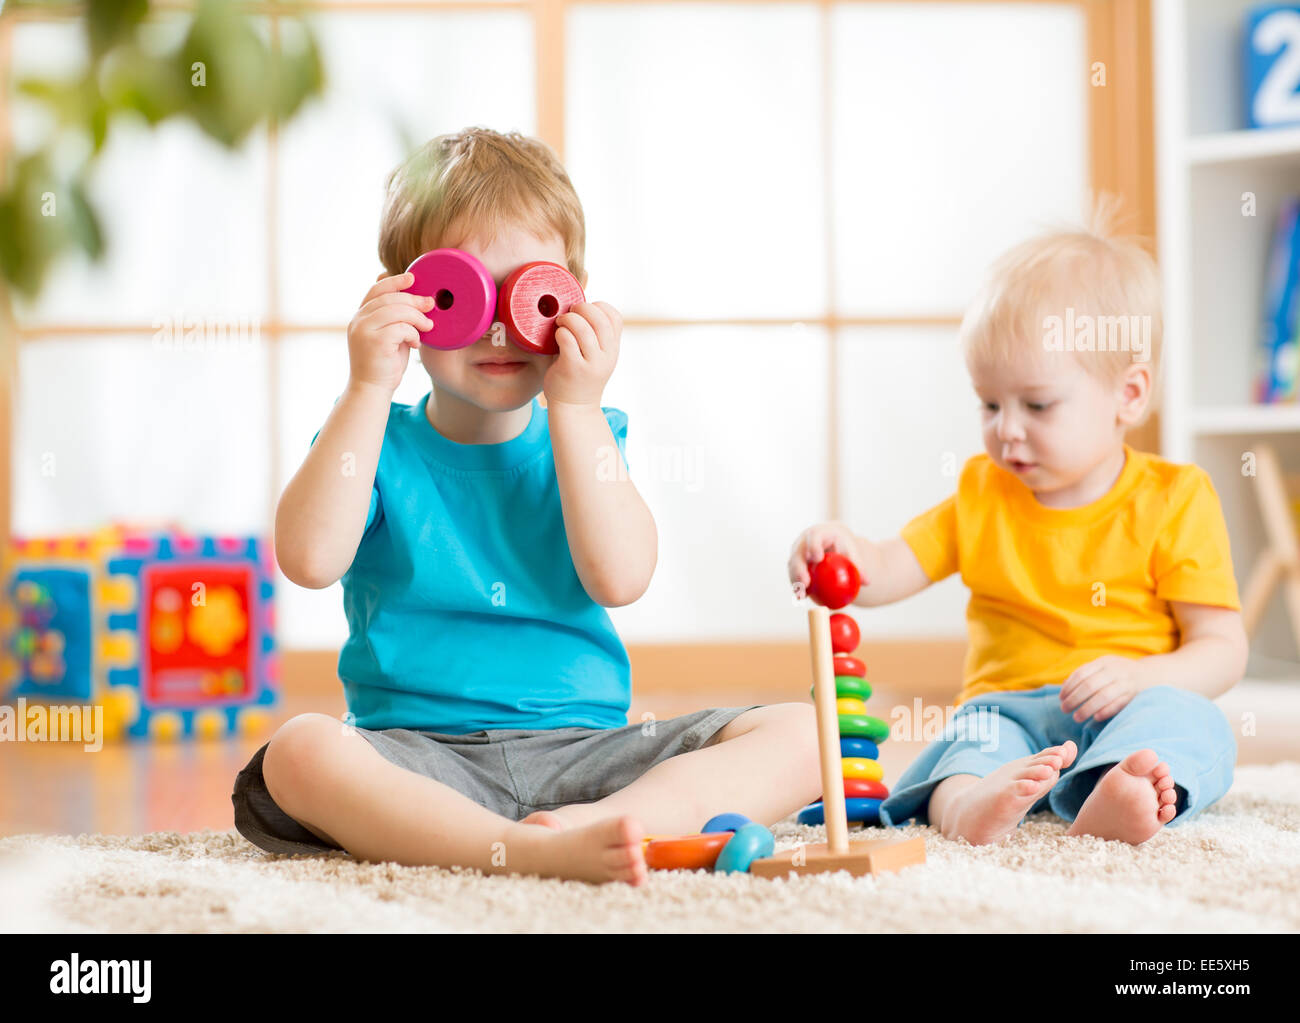 Bambini I ragazzi giocare con dei giocattoli educativi Foto Stock